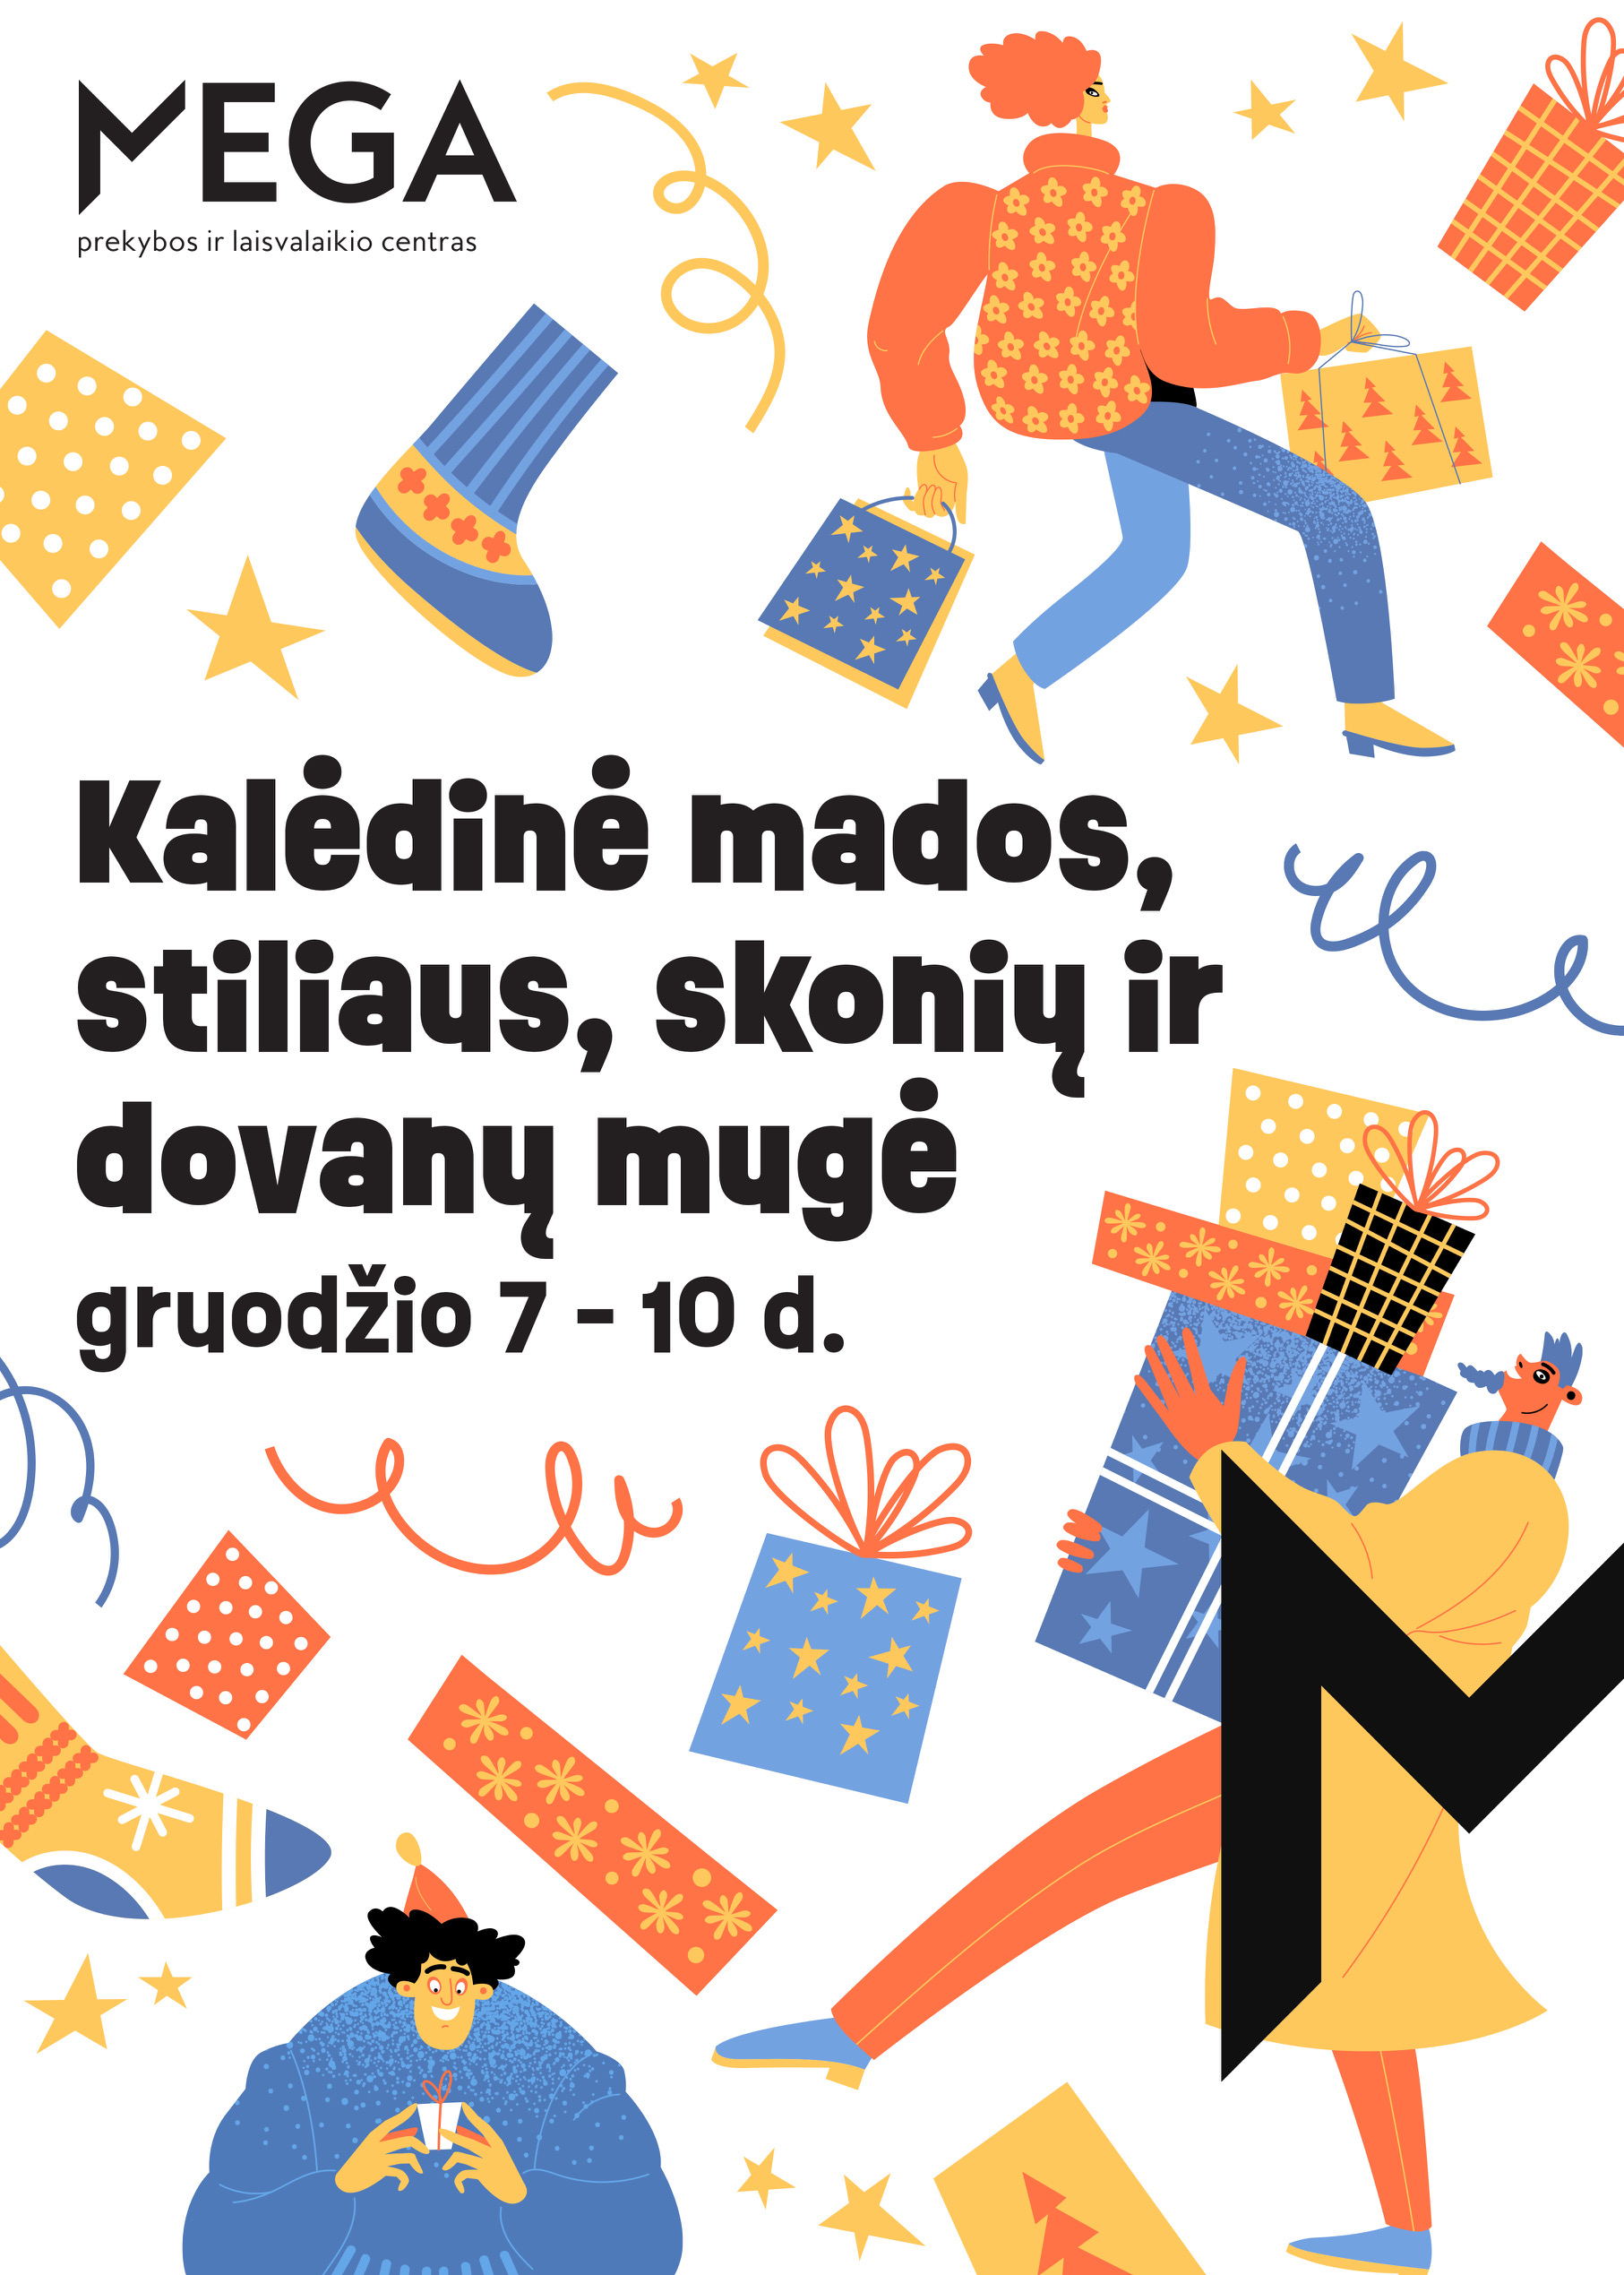 Gruodžio 7-10d. vyks kalėdinė mugė PLC „Mega“ Kaune